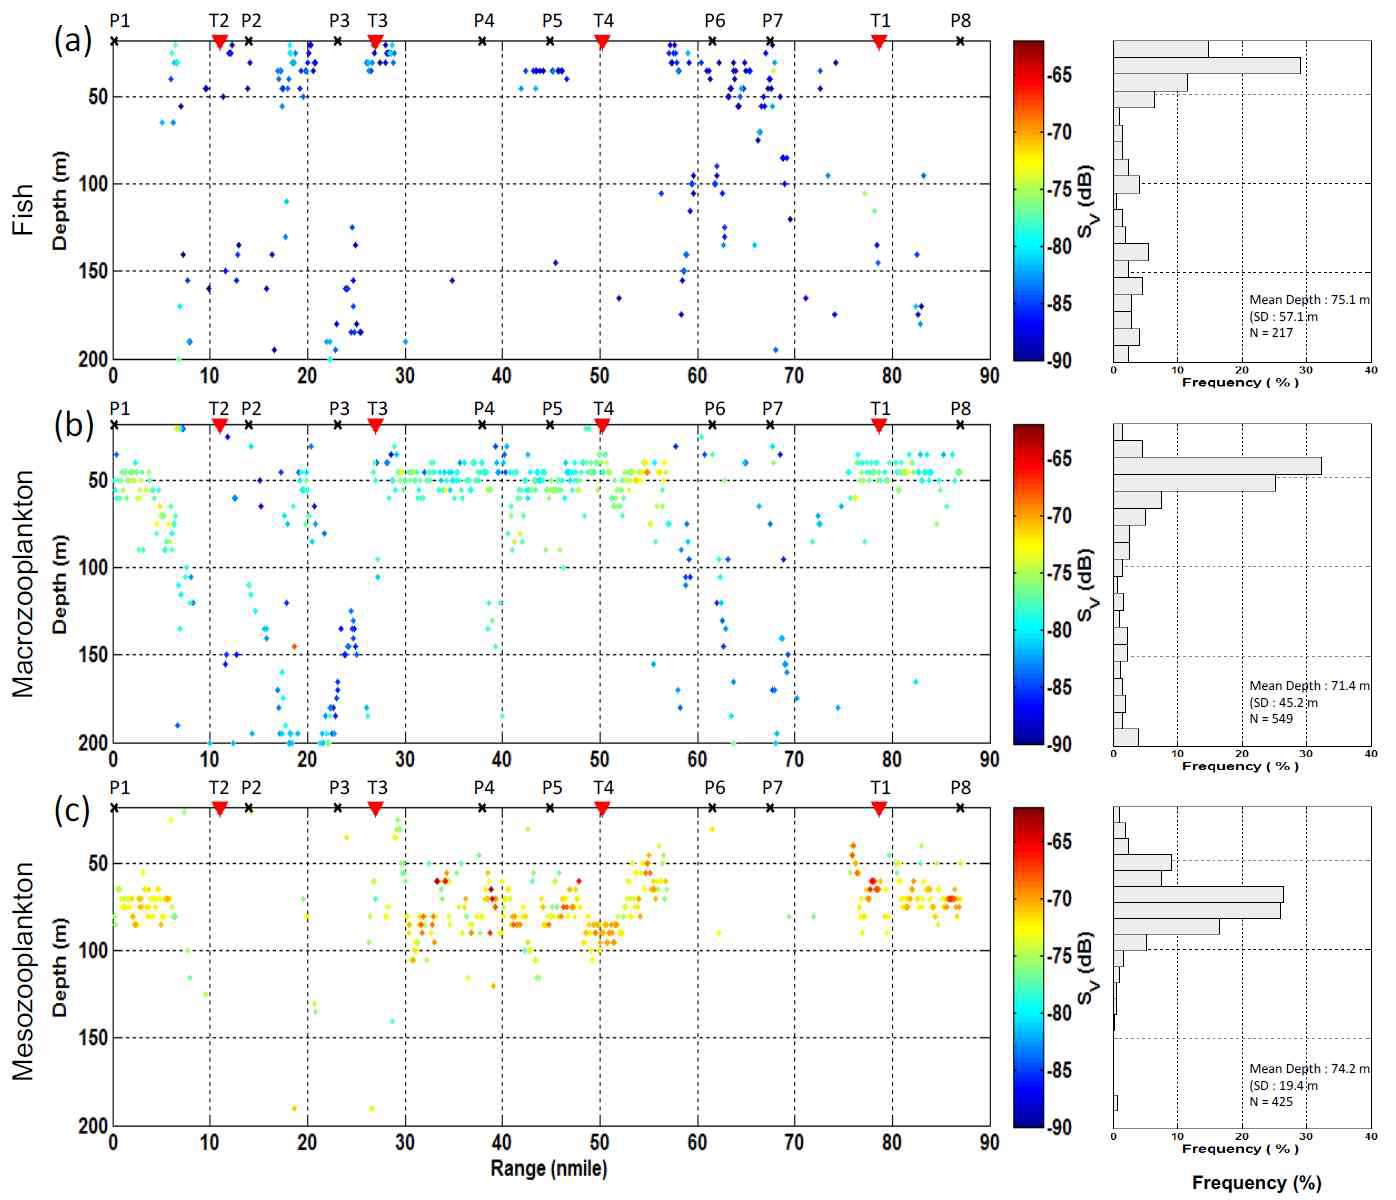 Volume backscattering strengths (SV) at 38 kHz for fish (-20 < SV120-38 kHz < 2) (a), SV at 120 kHz for macrozooplankton (2 < SV120-38 kHz < 12) (b), and SV at 120 kHz for mesozooplankton (12 < SV120-38 kHz < 20) (c).